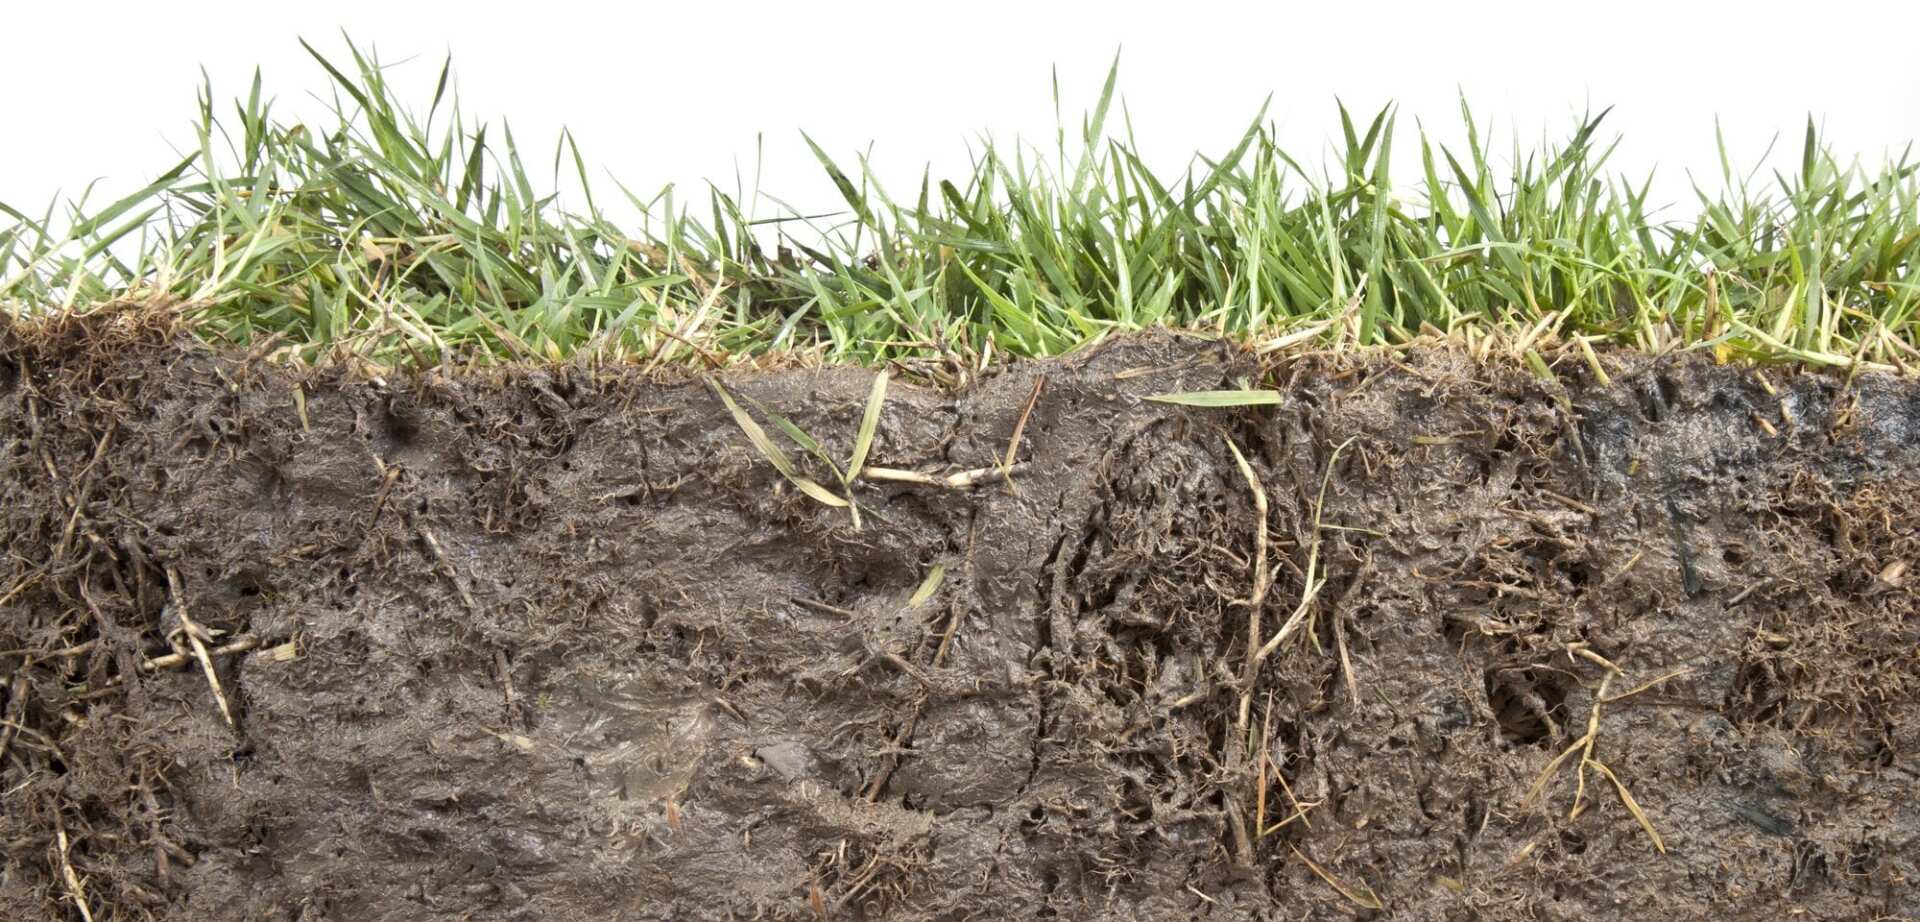 Неприятный почва. Корни сидератов. Земля с травой. Почва трава срез. Почва с травой в разрезе.